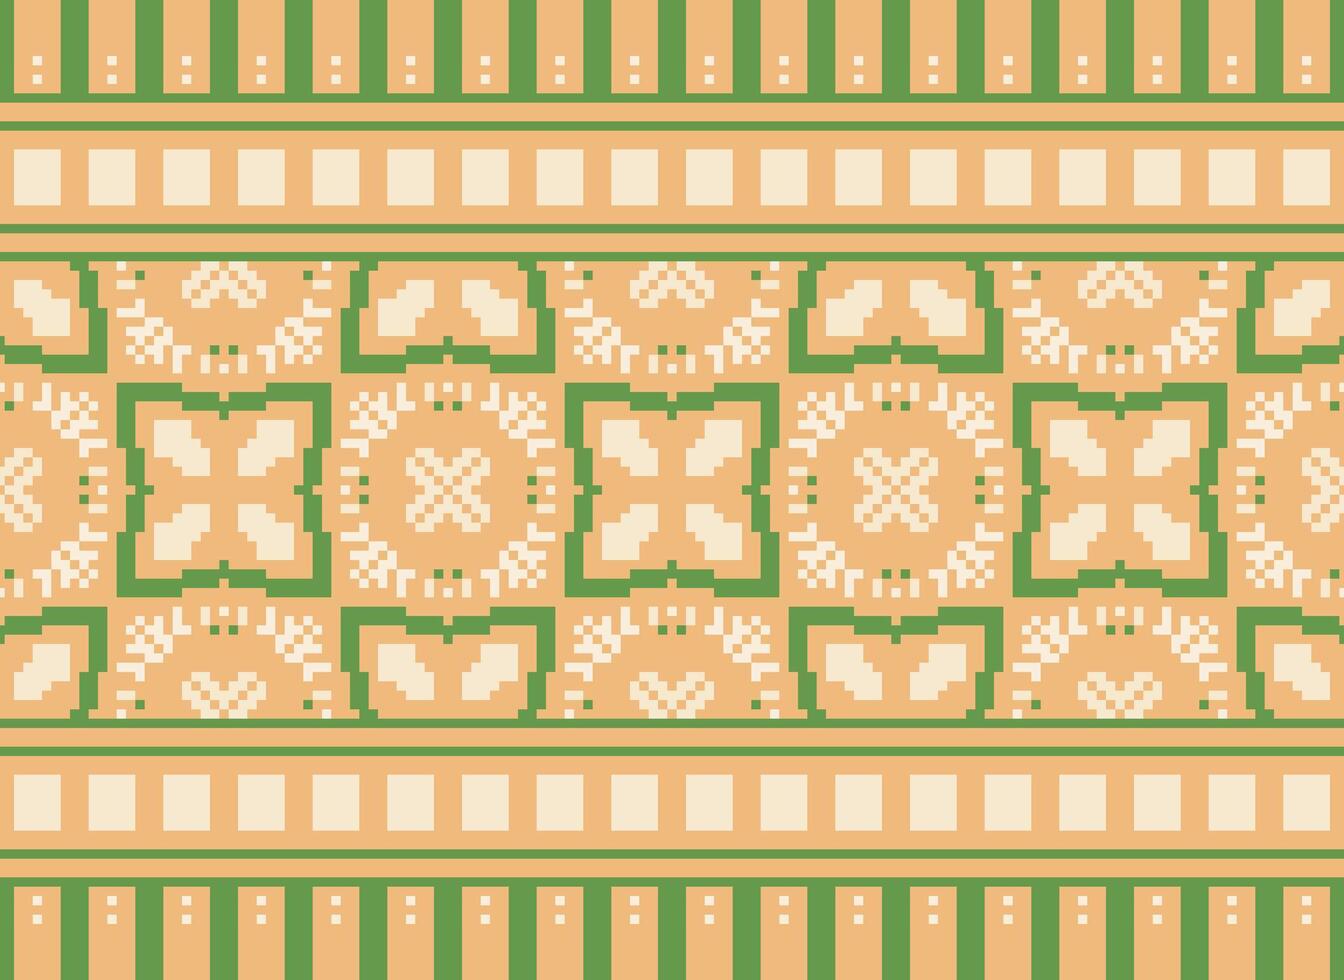 annate attraversare punto tradizionale etnico modello paisley fiore ikat sfondo astratto azteco africano indonesiano indiano senza soluzione di continuità modello per tessuto Stampa stoffa vestito tappeto le tende e sarong vettore